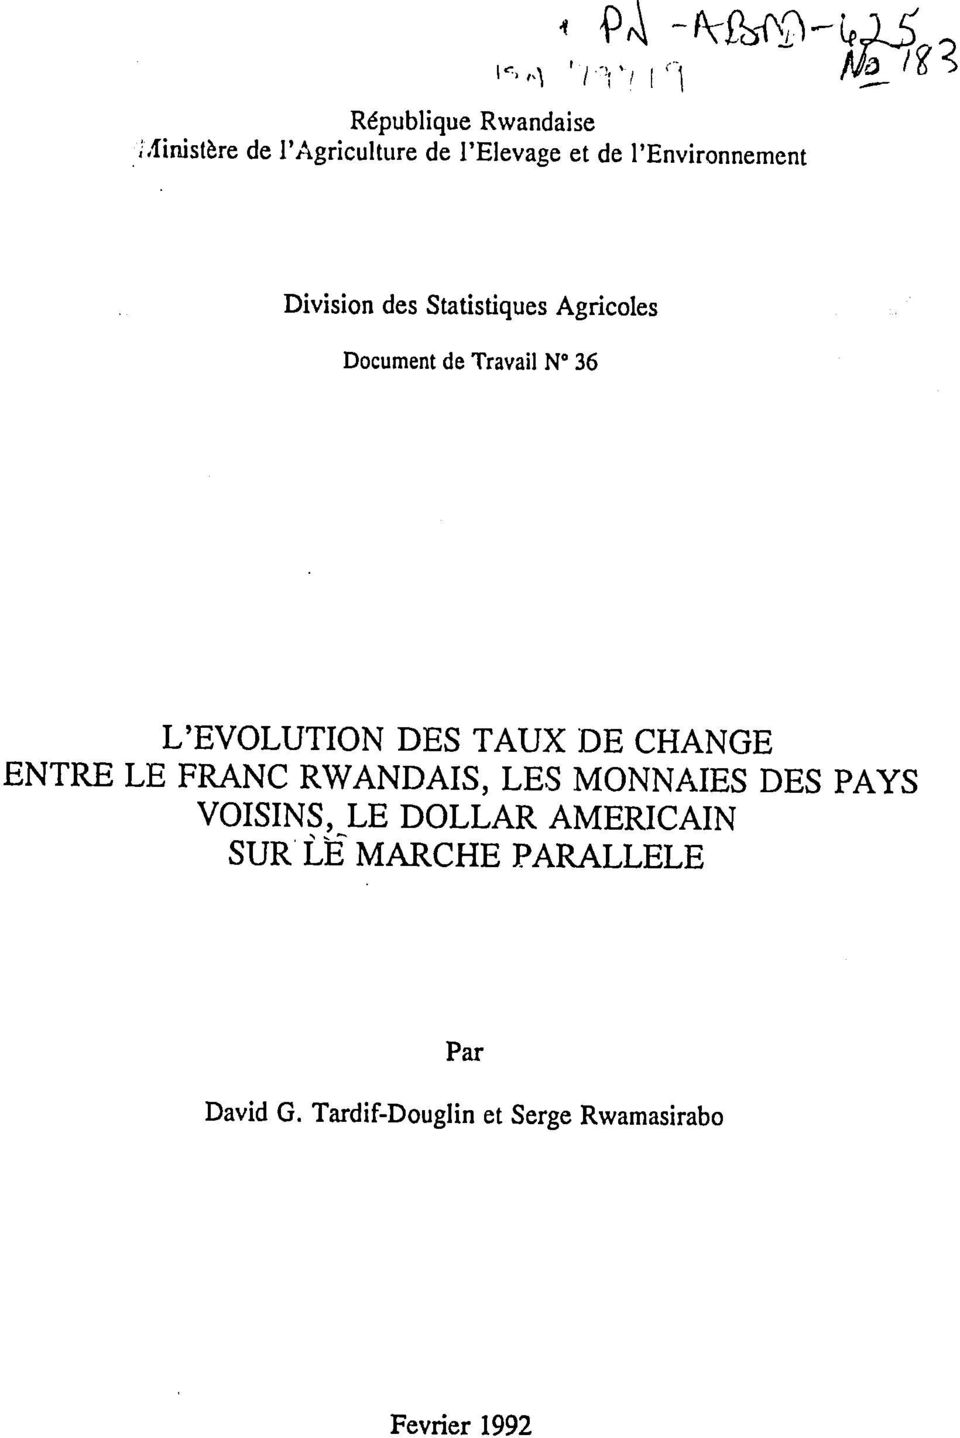 L'EVOLUTION DES TAUX DE CHANGE ENTRE LE FRANC RWANDAIS, LES MONNAIES DES PAYS